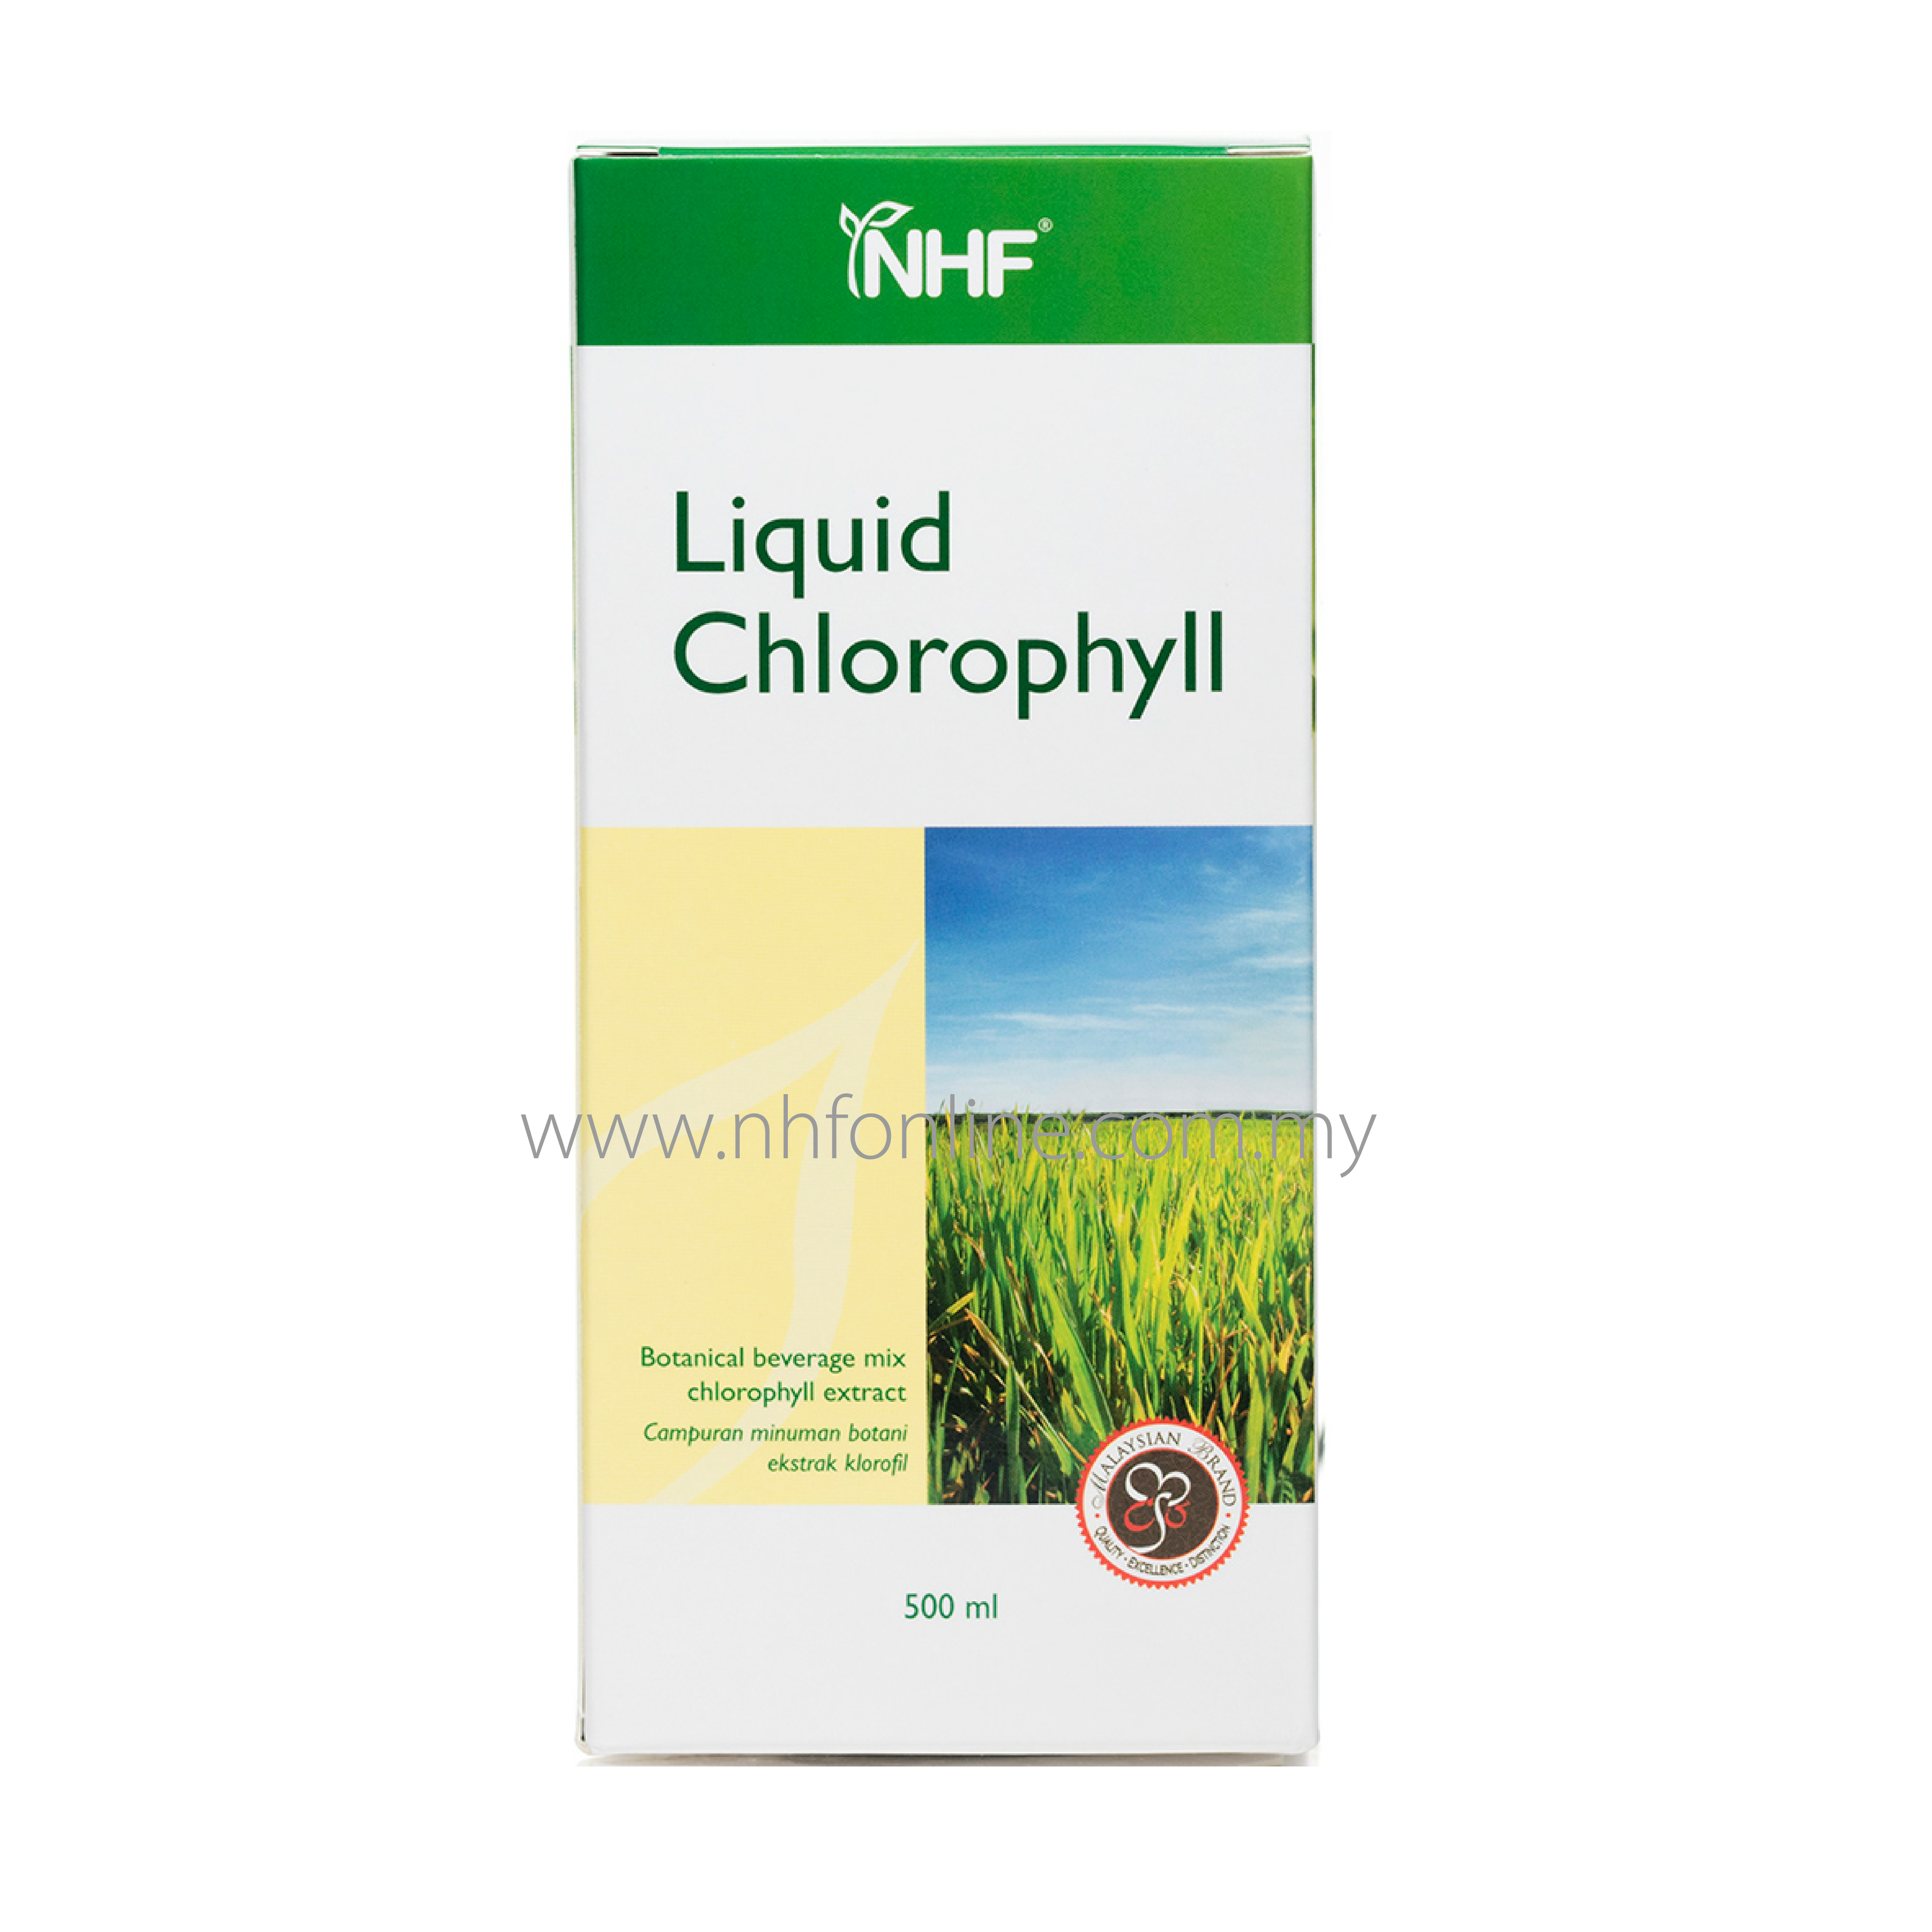 Chlorophyll liquid Liquid Chlorophyll: